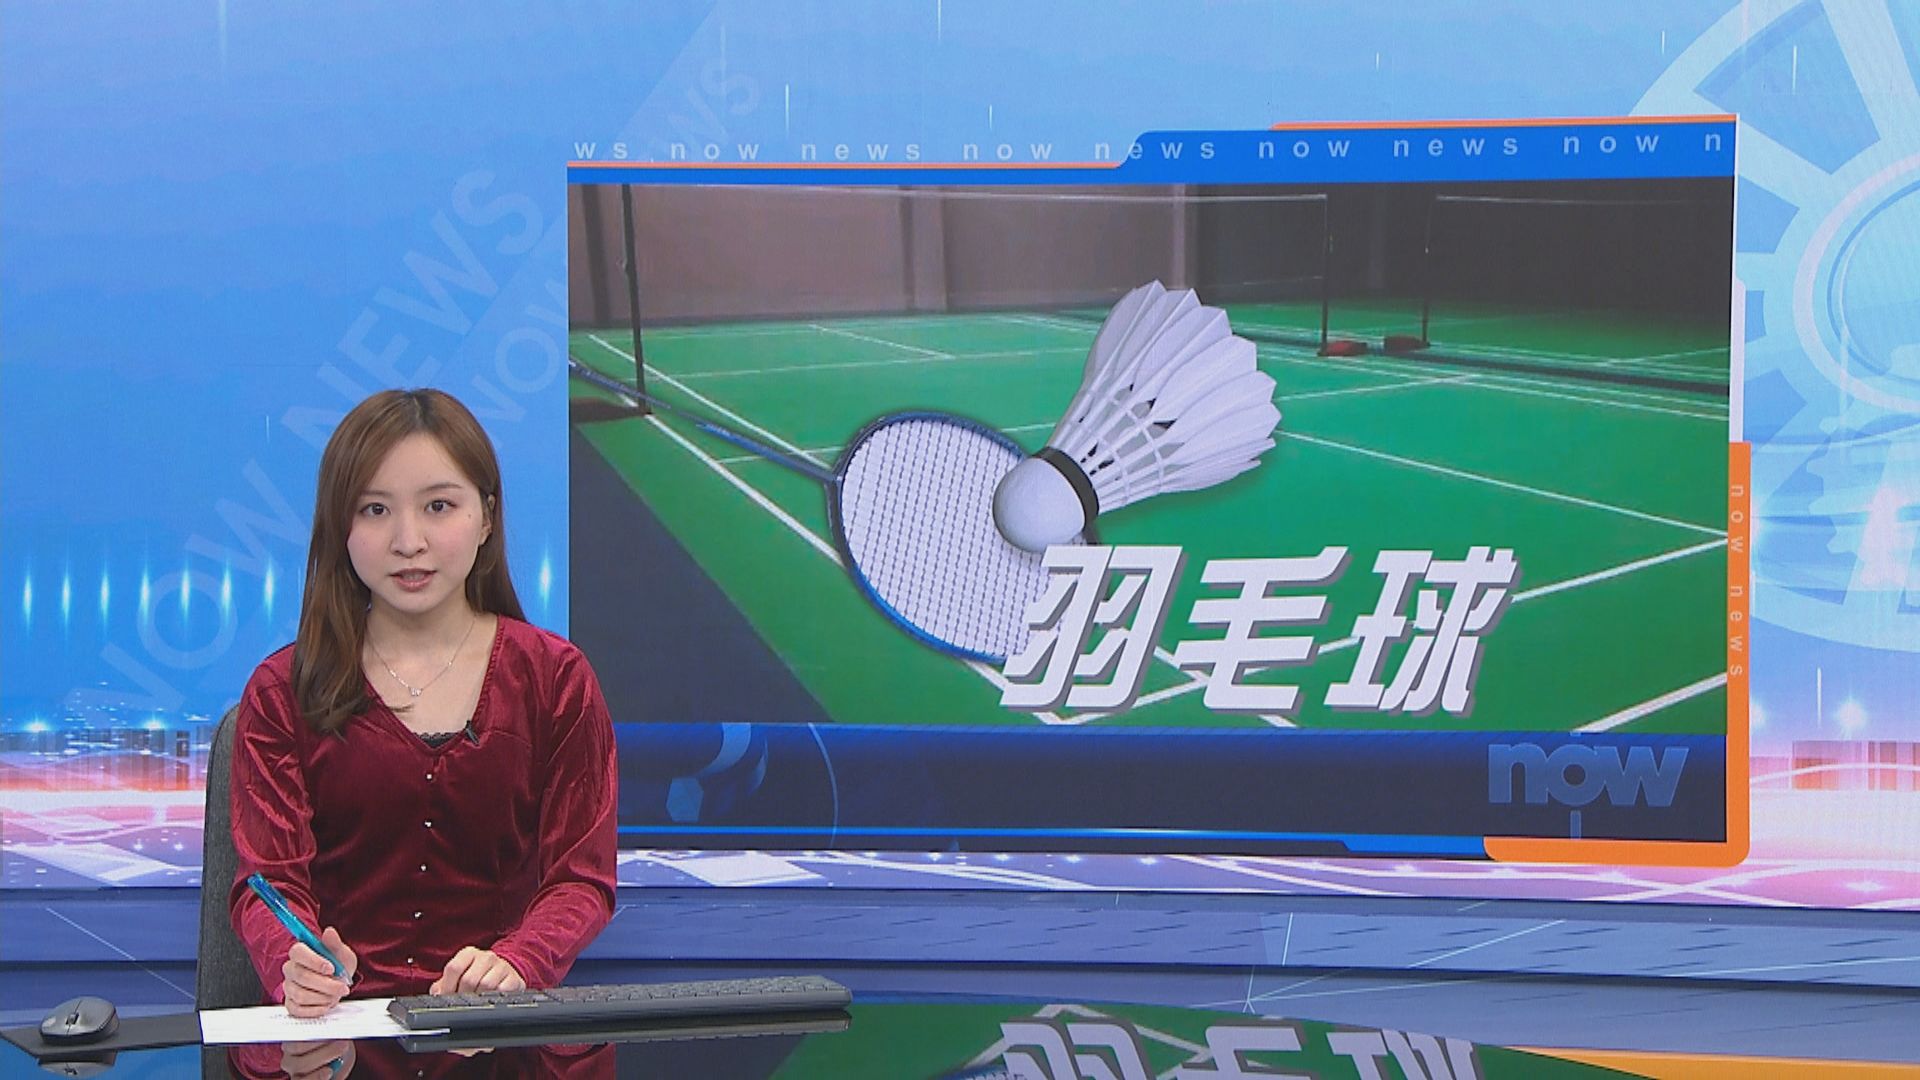 中國羽毛球大師賽 「鄧謝配」順利晉級次圈